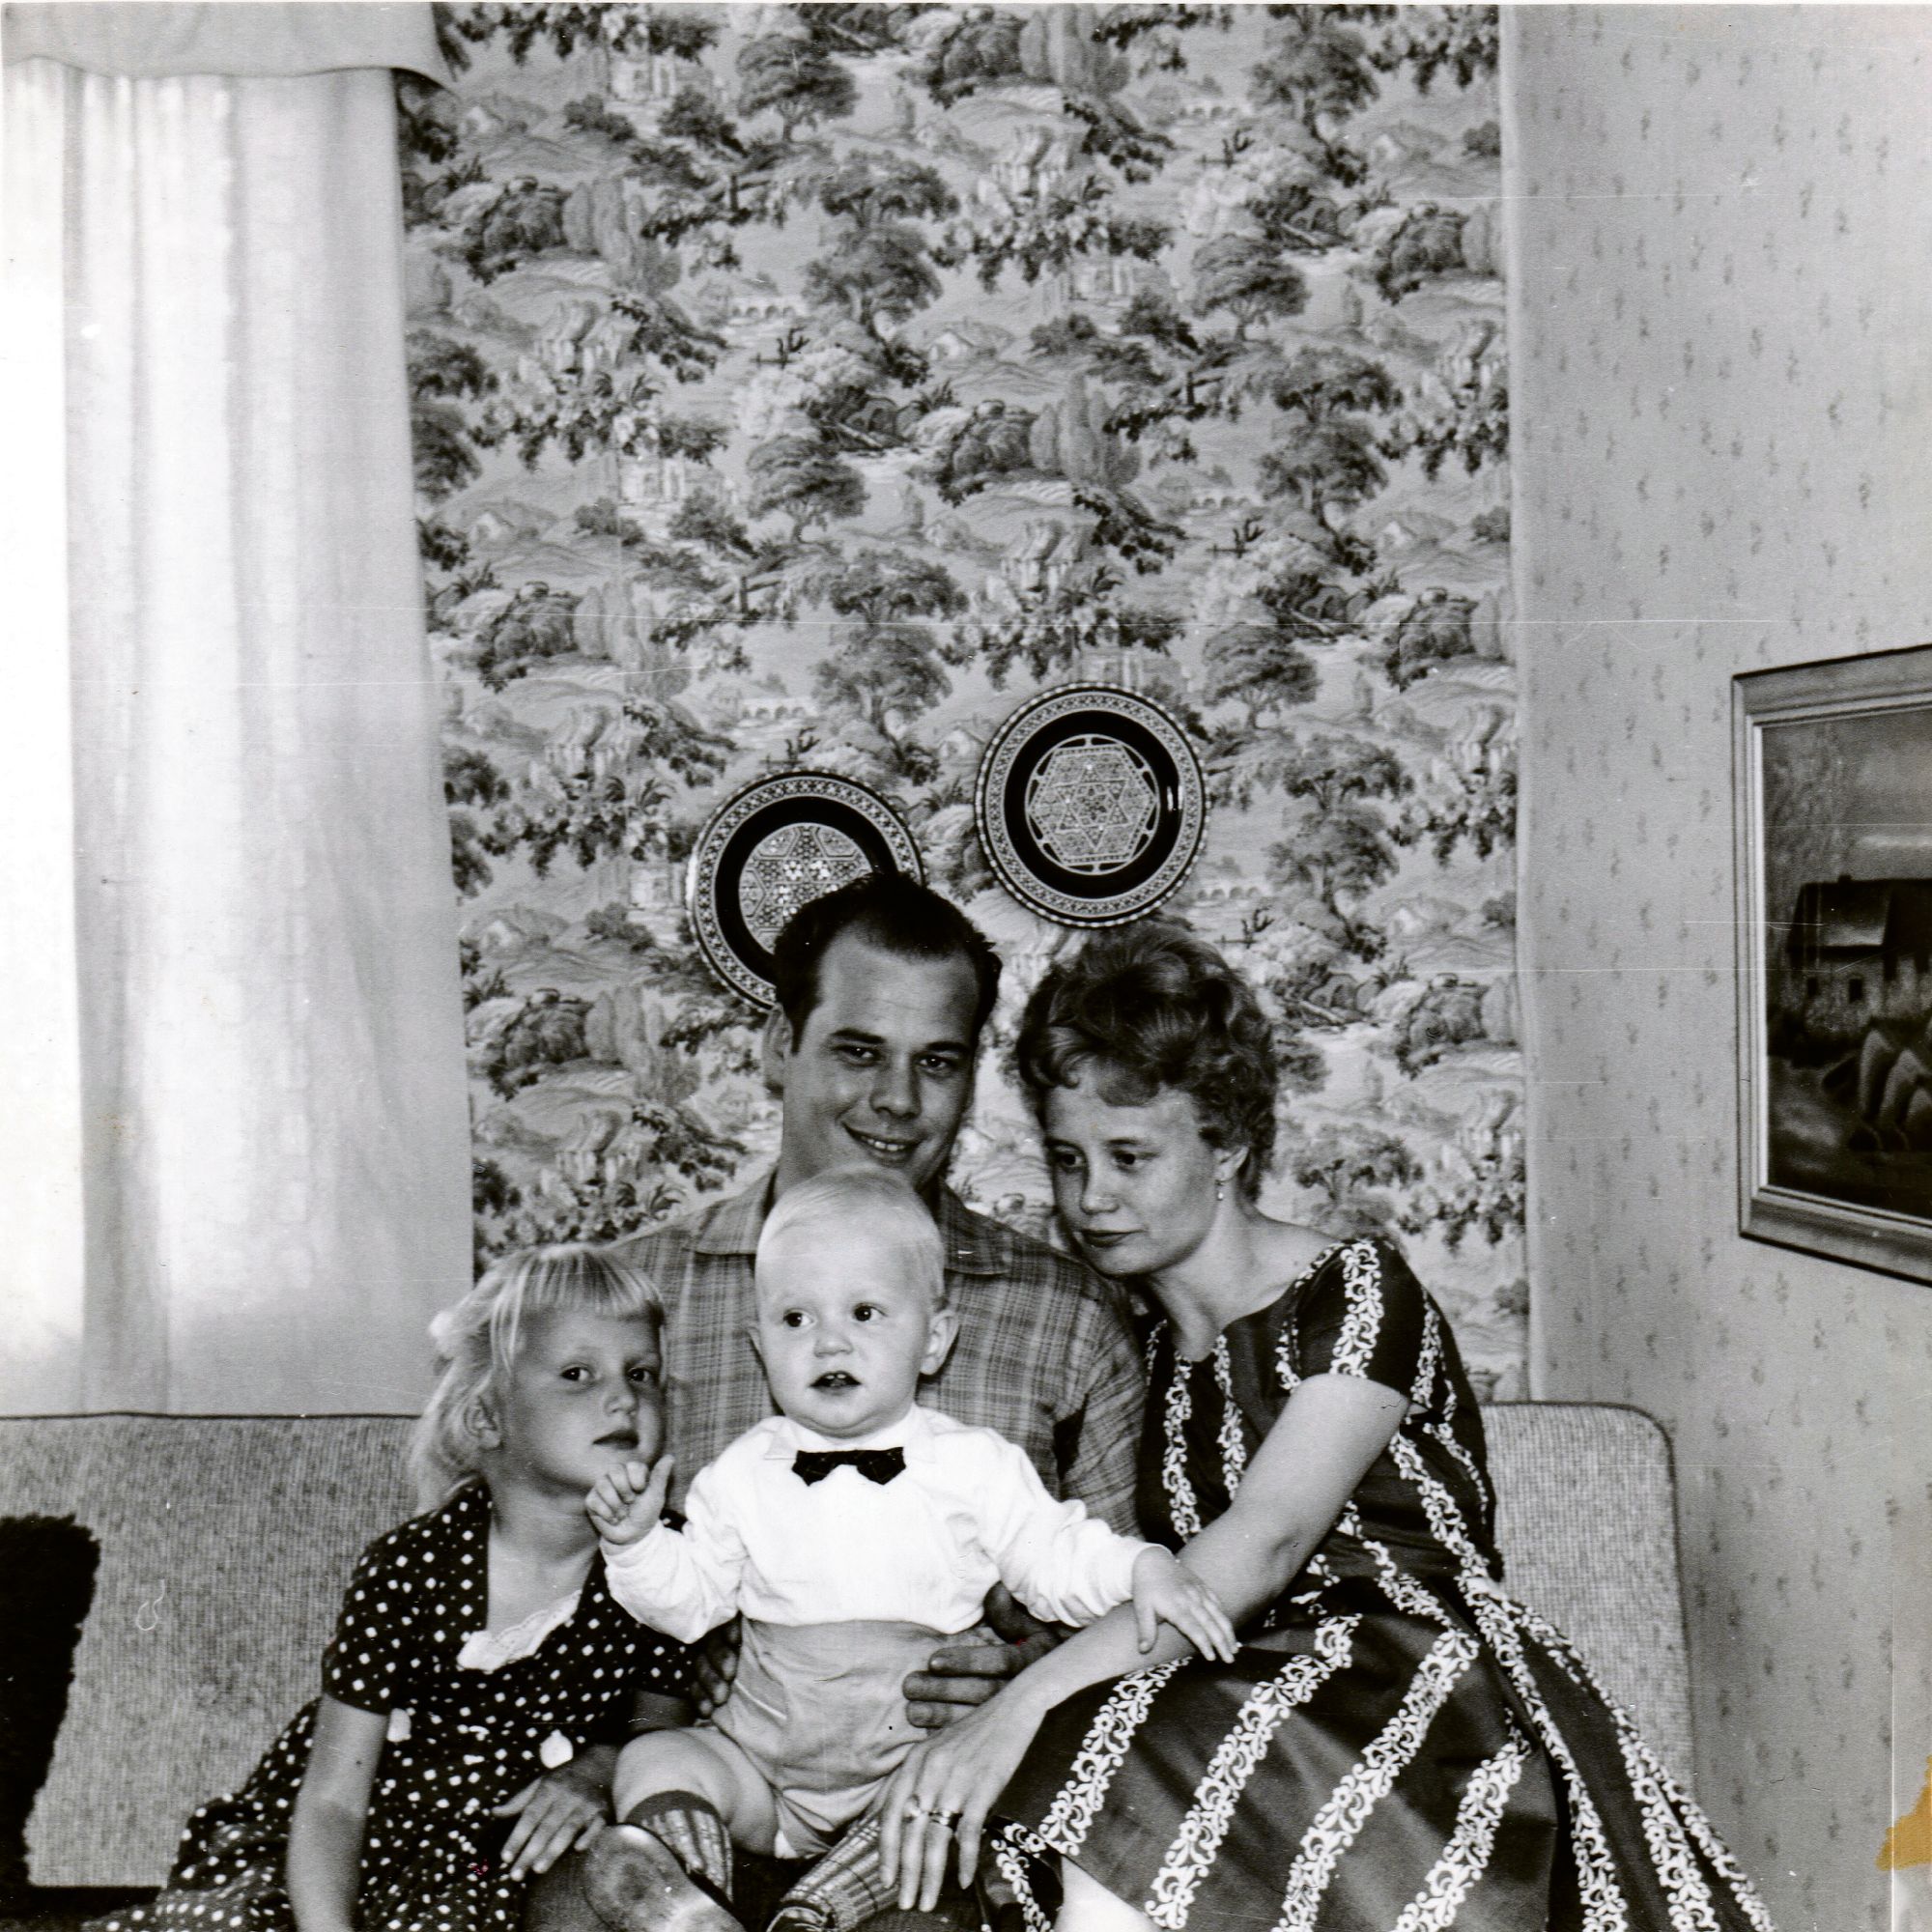 Terjo Markkanen ja Seija Halm rakastuivat Terjon palattua meriltä syksyllä 1958. Kuvassa on Terjo, Seija, heidän yhteinen poika eli Jeren isä sekä tytär Seijan aiemmasta liitosta. © Markkasen kotialbumi